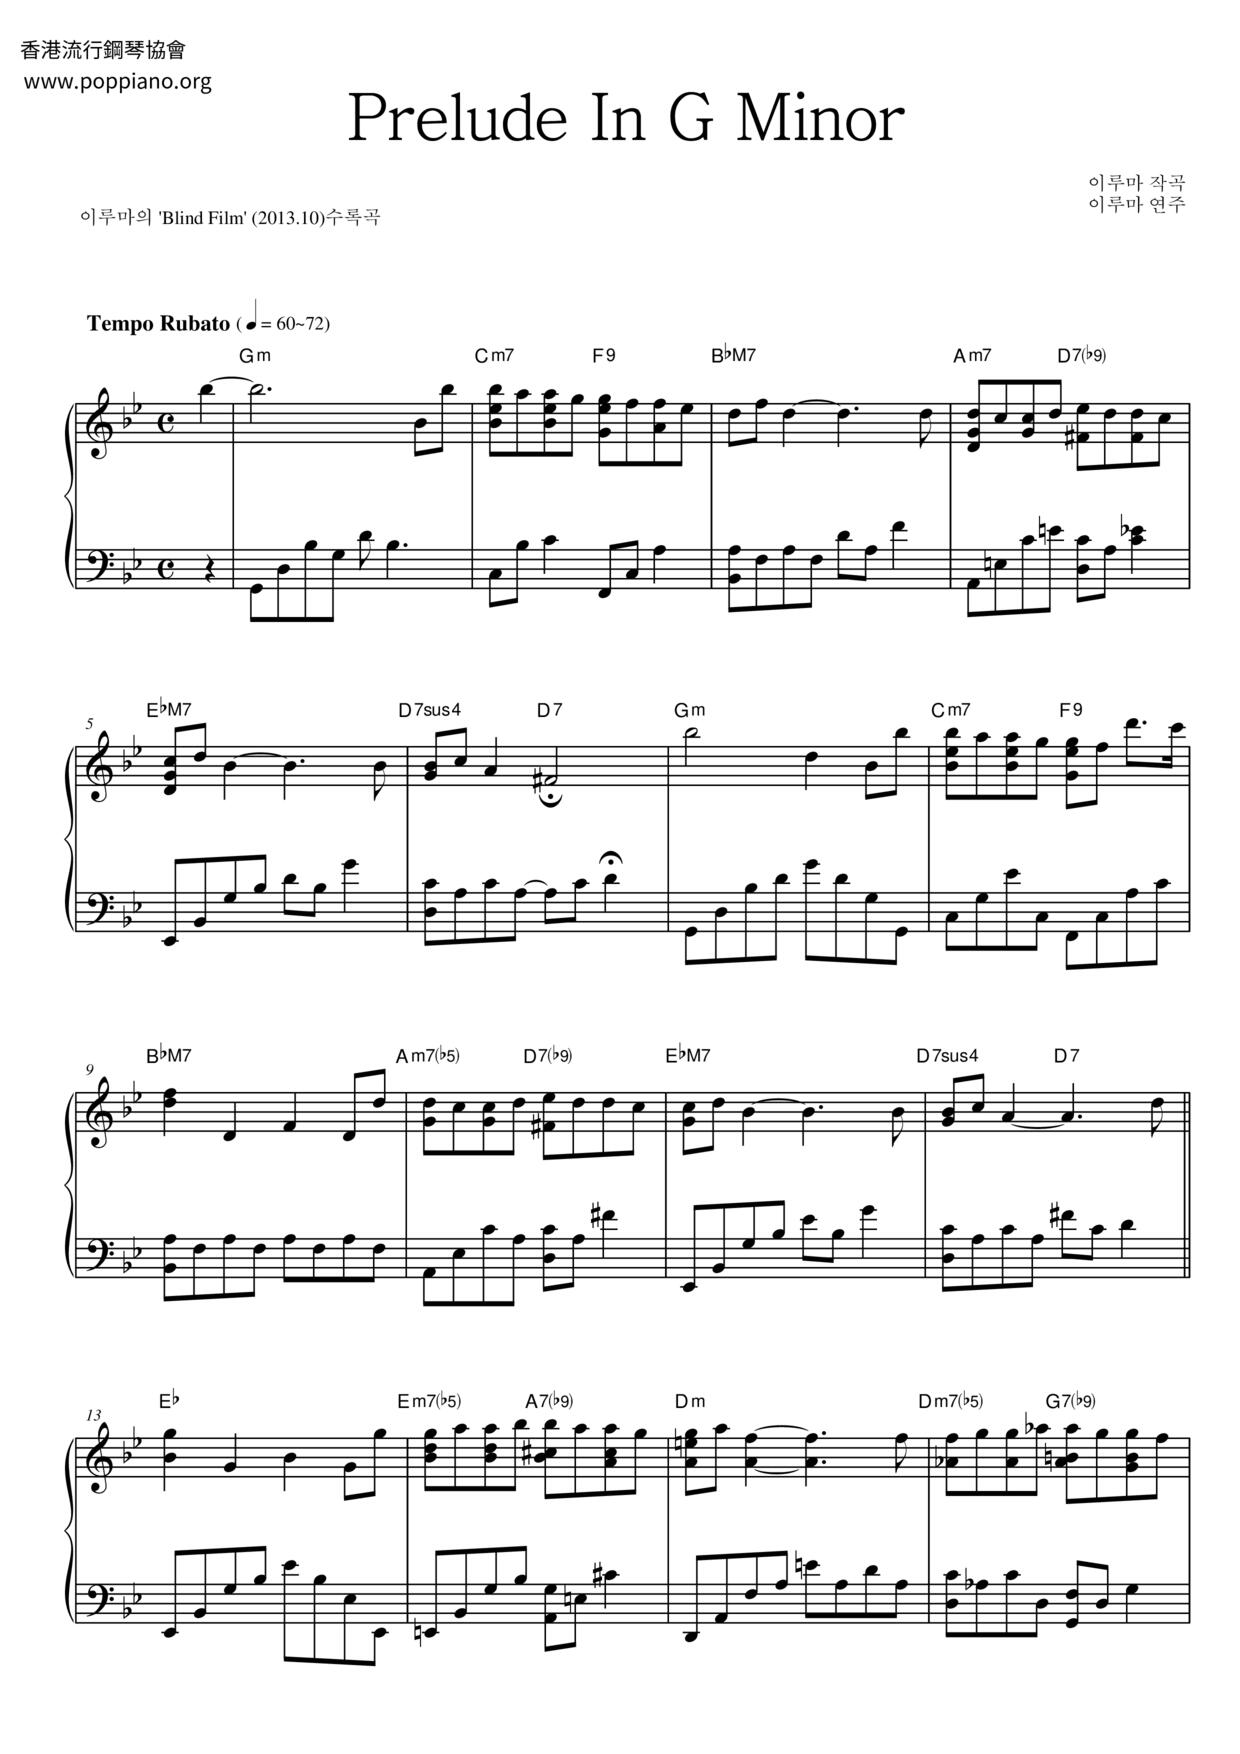 Prelude In G Minor Score